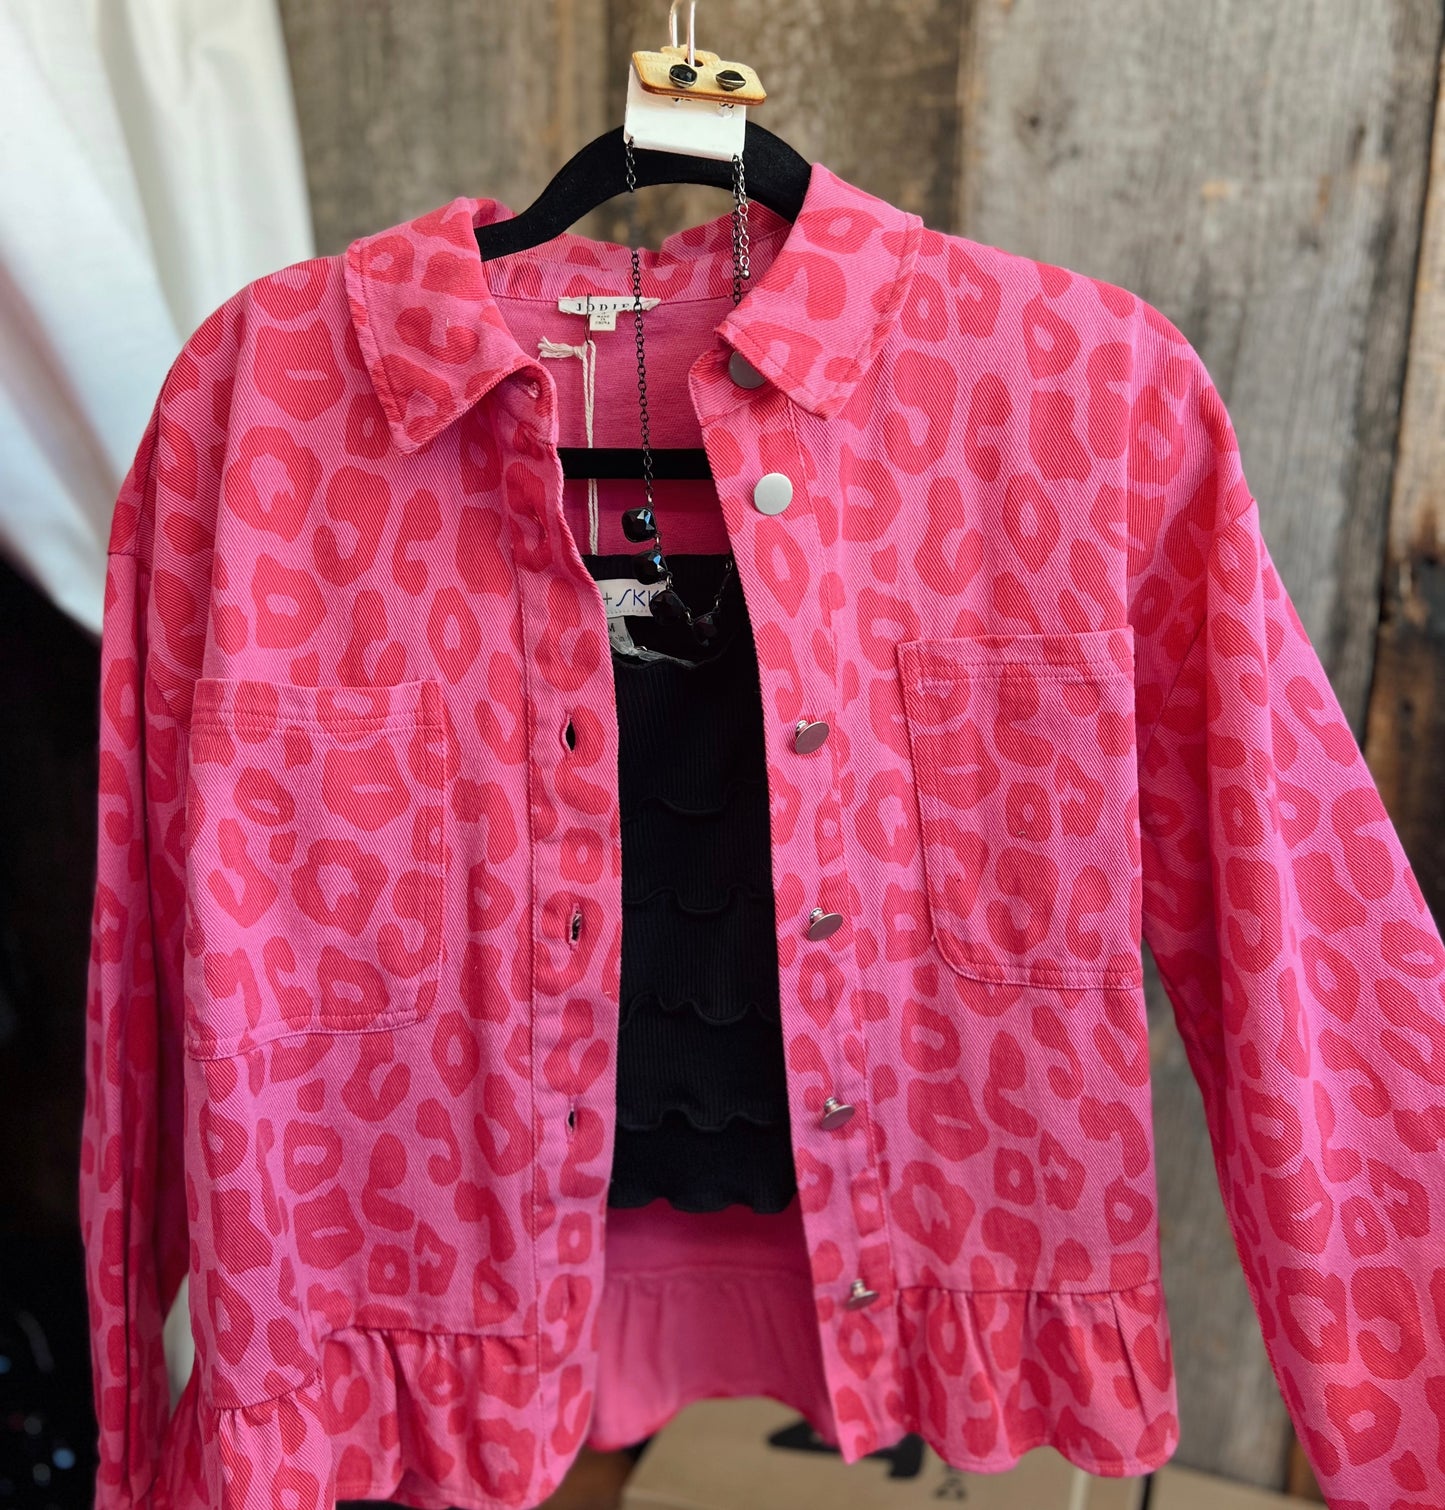 Running Wild Hot Pink Leopard Denim Jacket